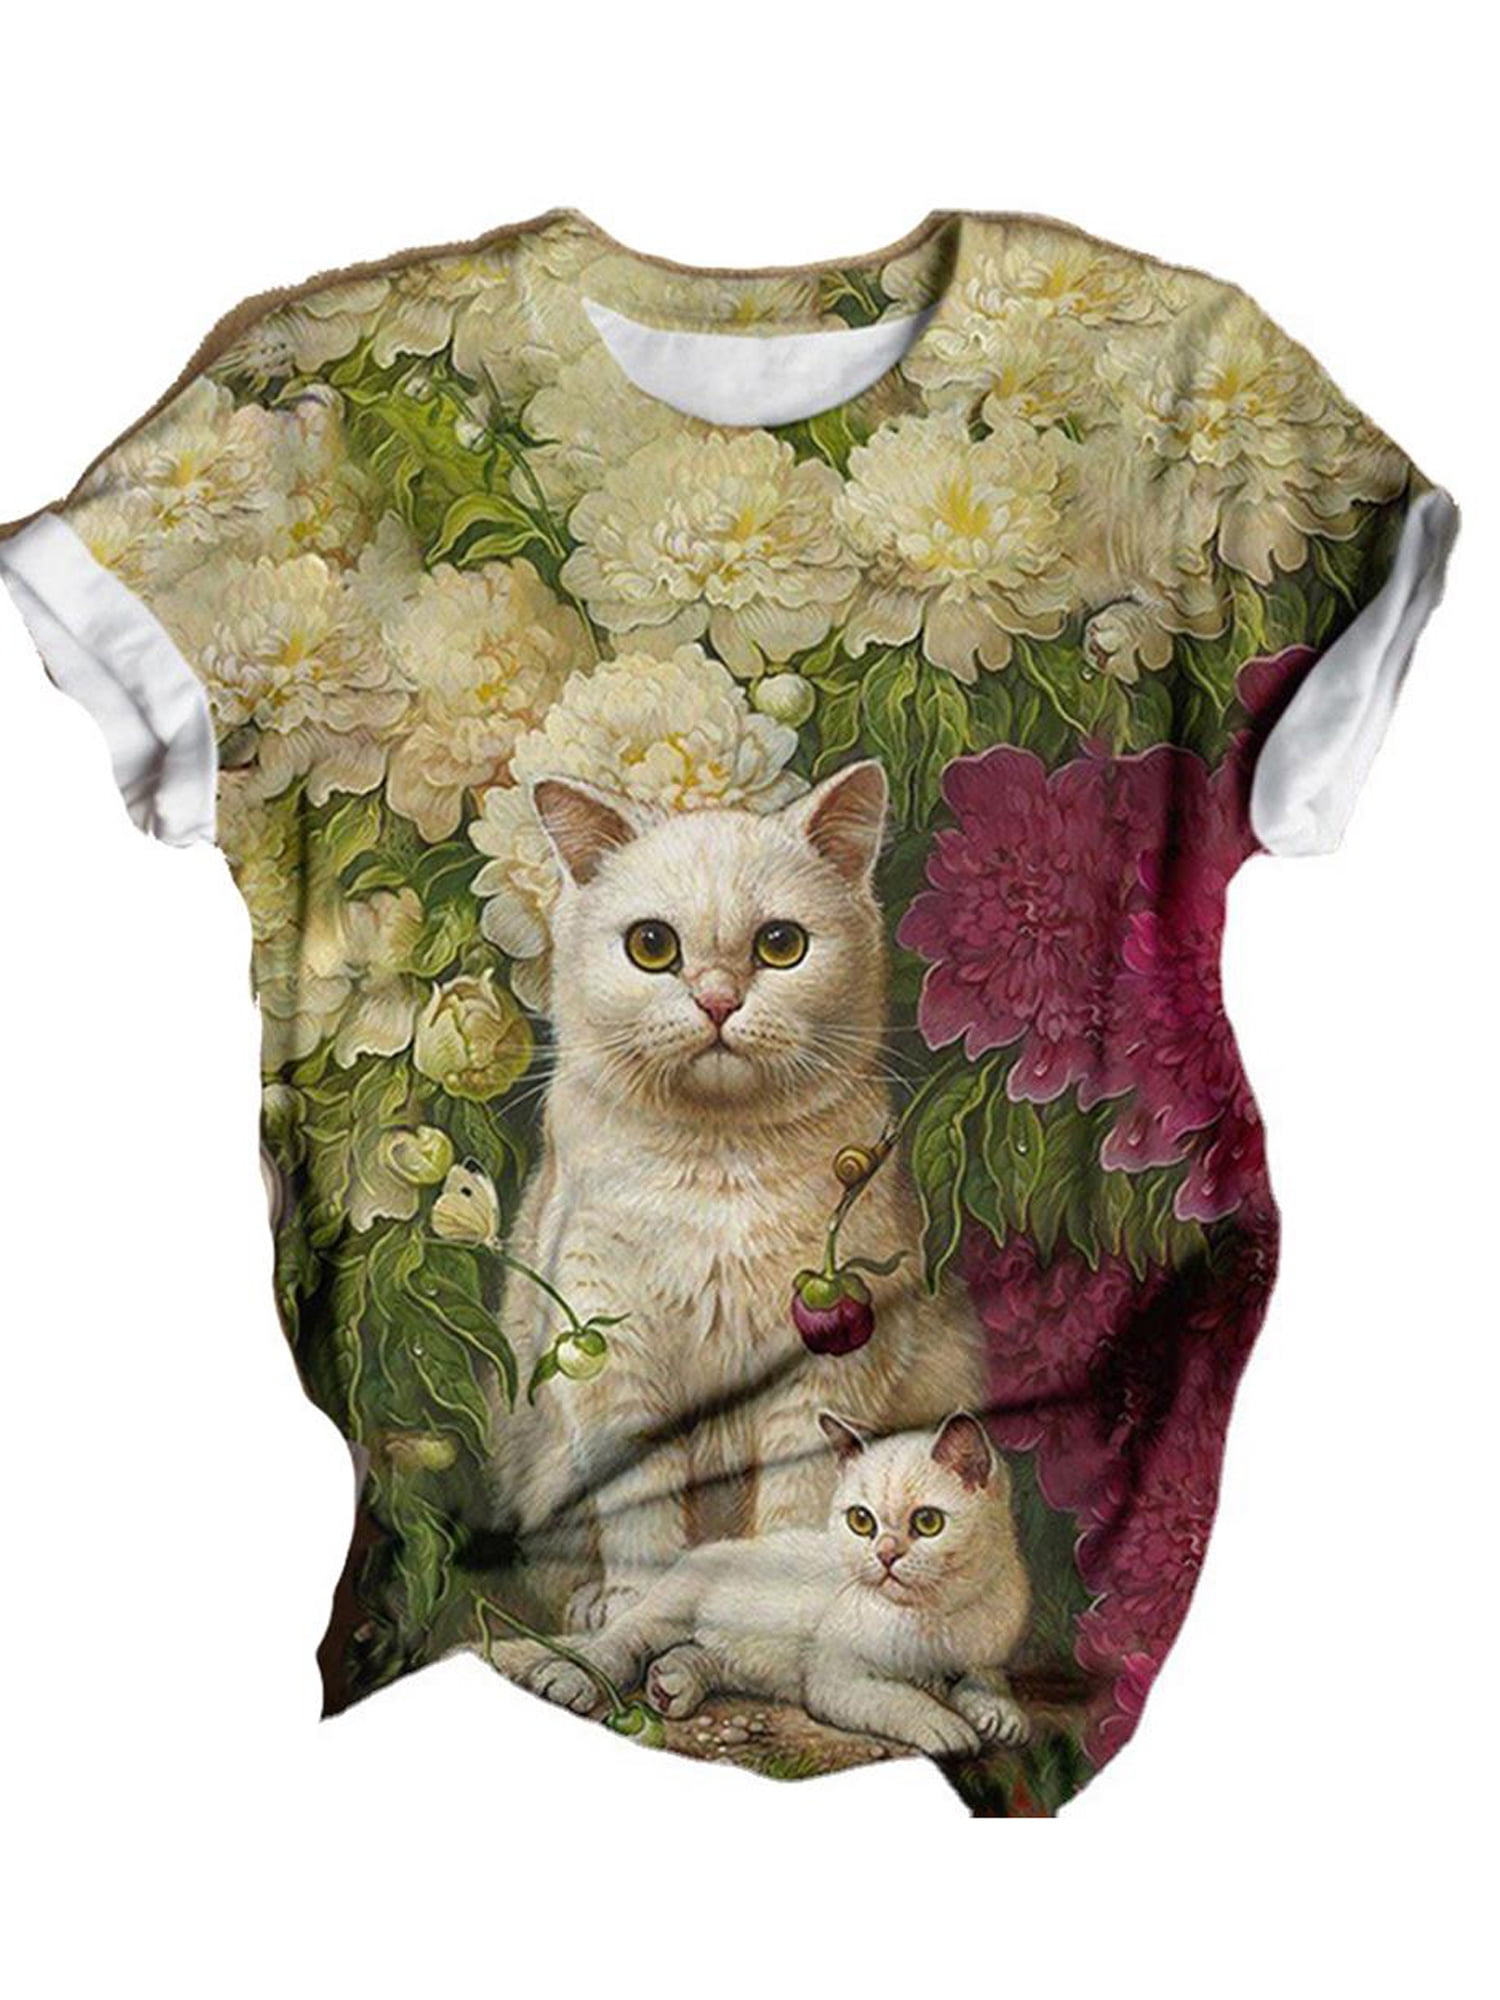 Jiayit Womens Summer Cute Cat Print Tops Blouse Short Sleeve T-Shirts for Women 